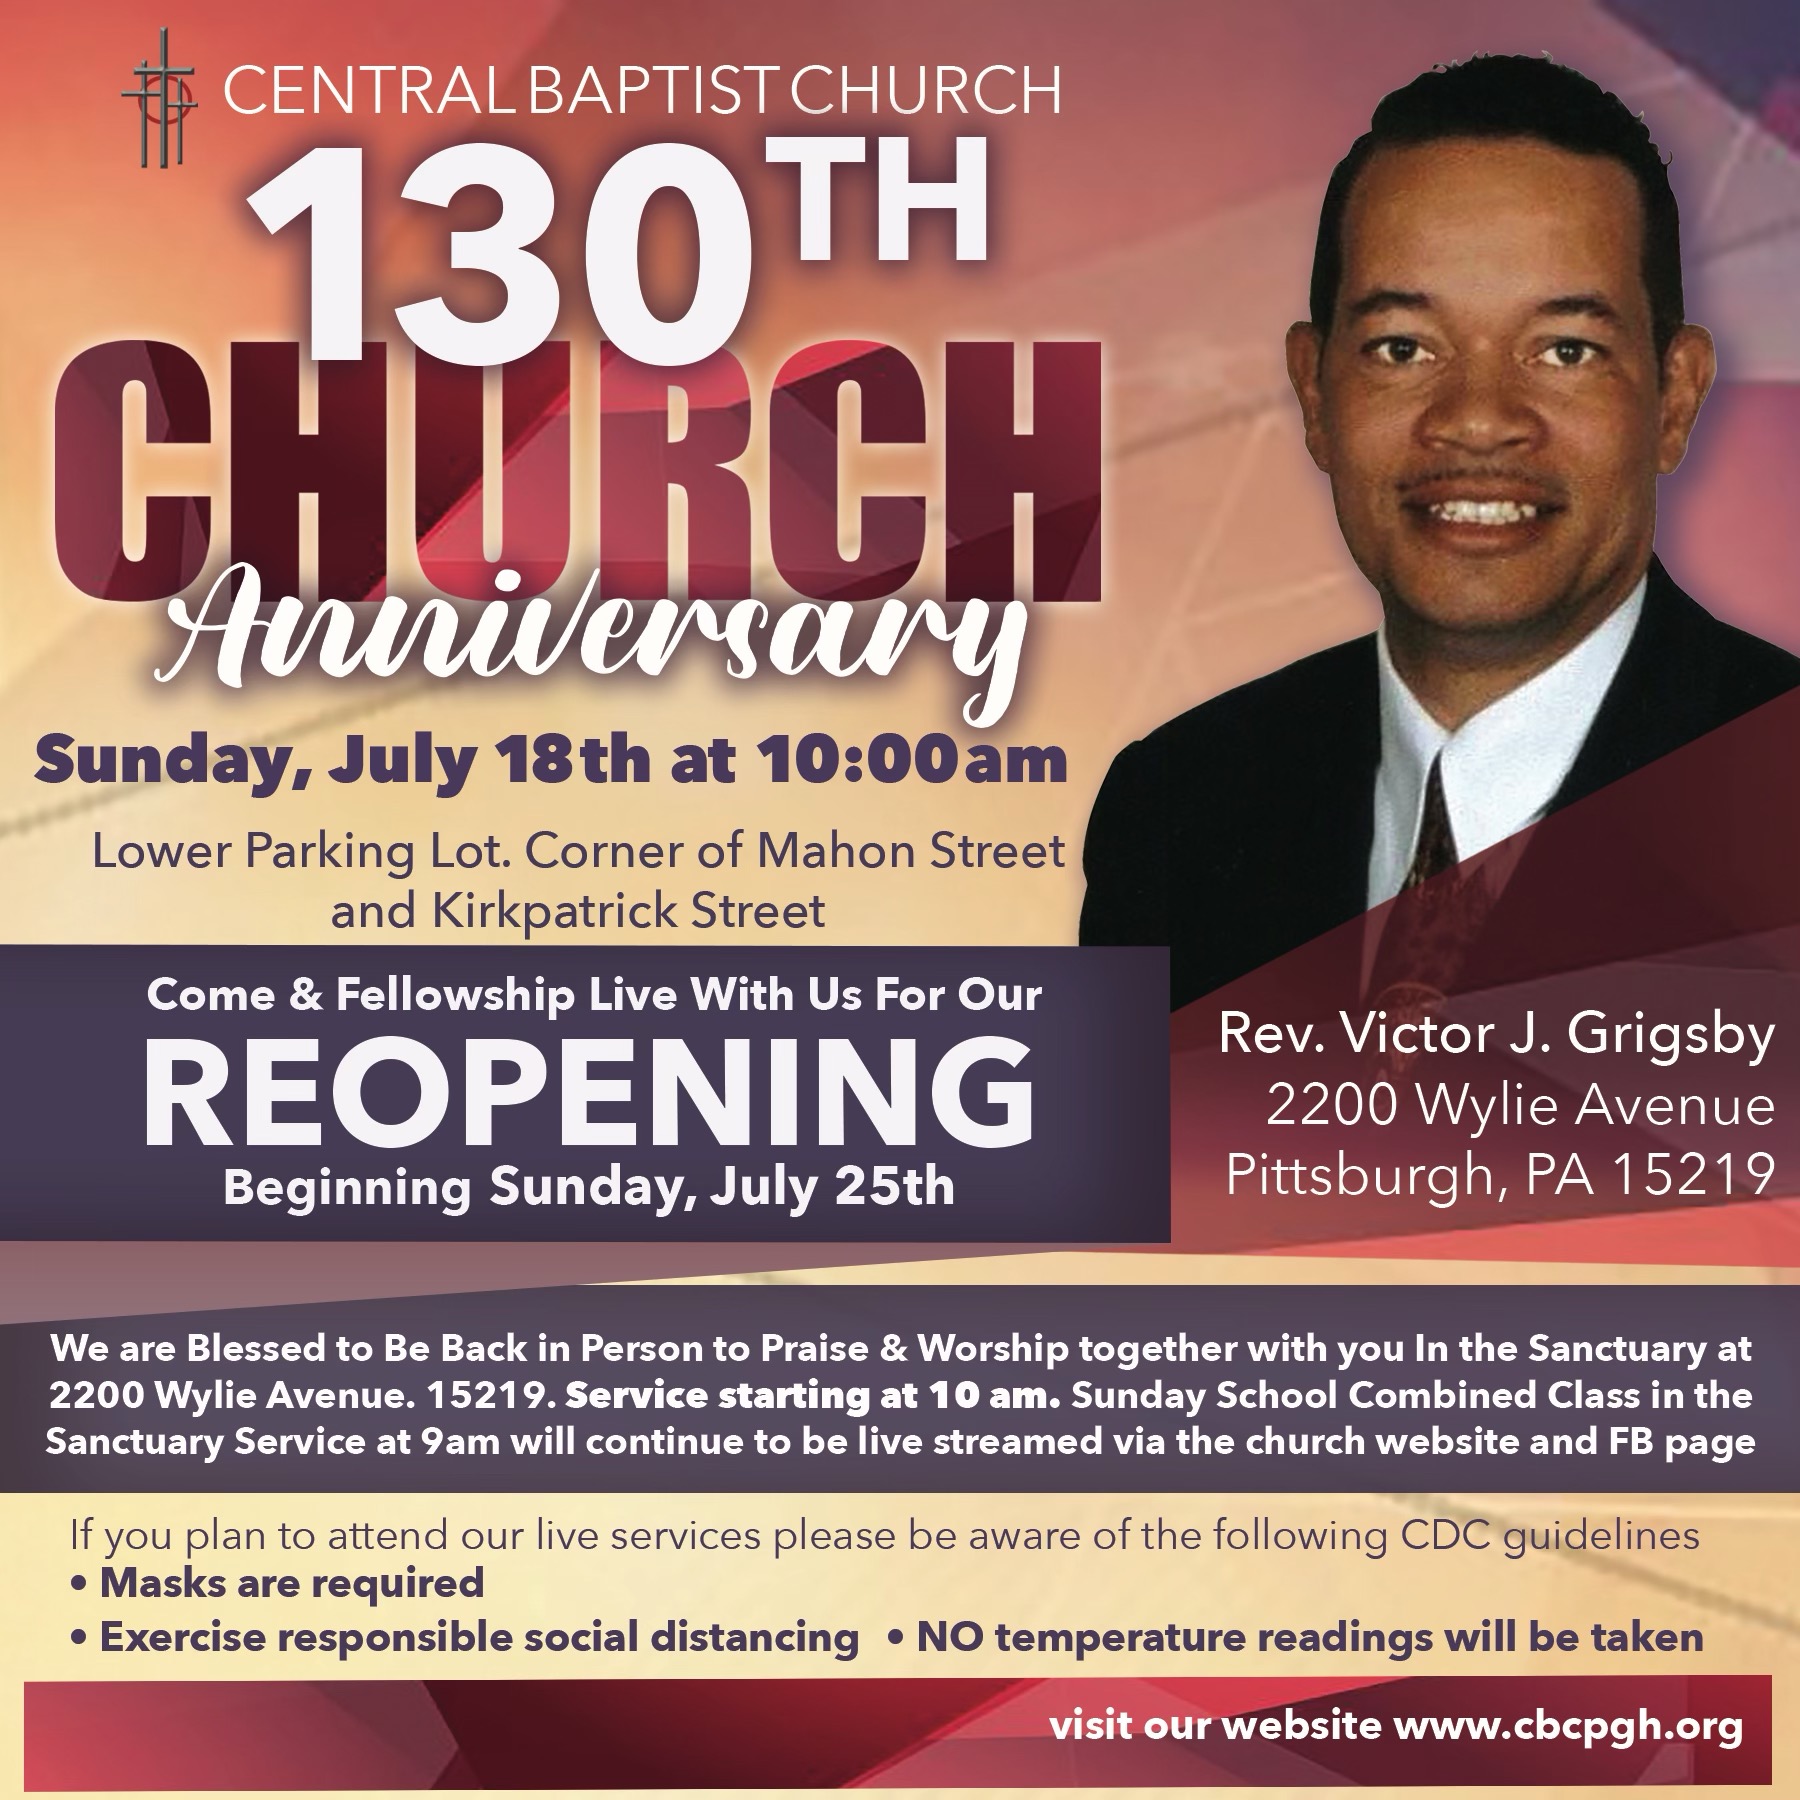 Central Baptist Church 130th Church Anniversary